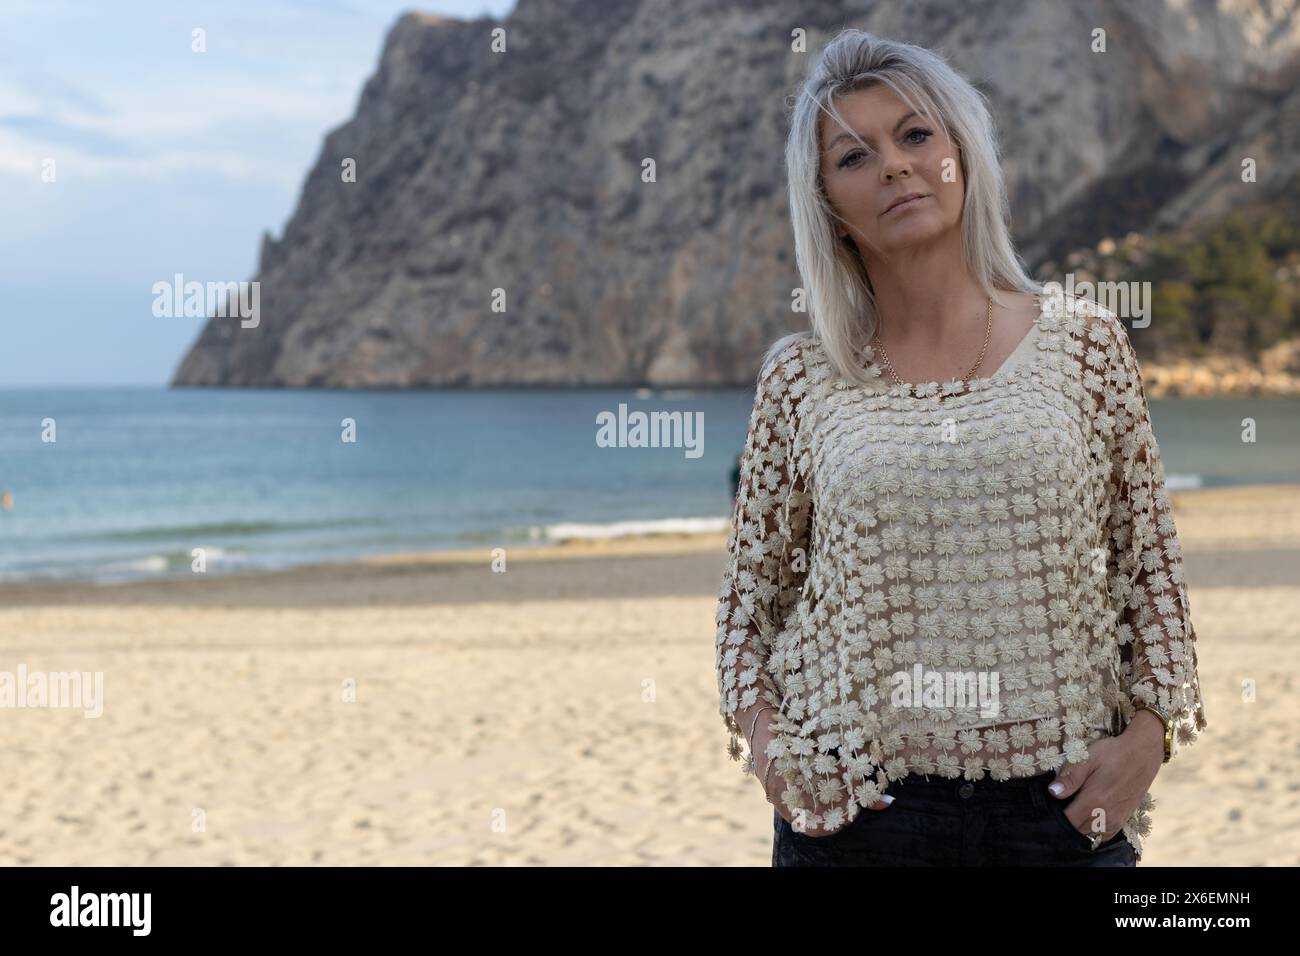 Dieses Porträt fängt die heitere Schönheit einer Frau an den sonnenverwöhnten Stränden von Calpe, Spanien, ein. Stockfoto